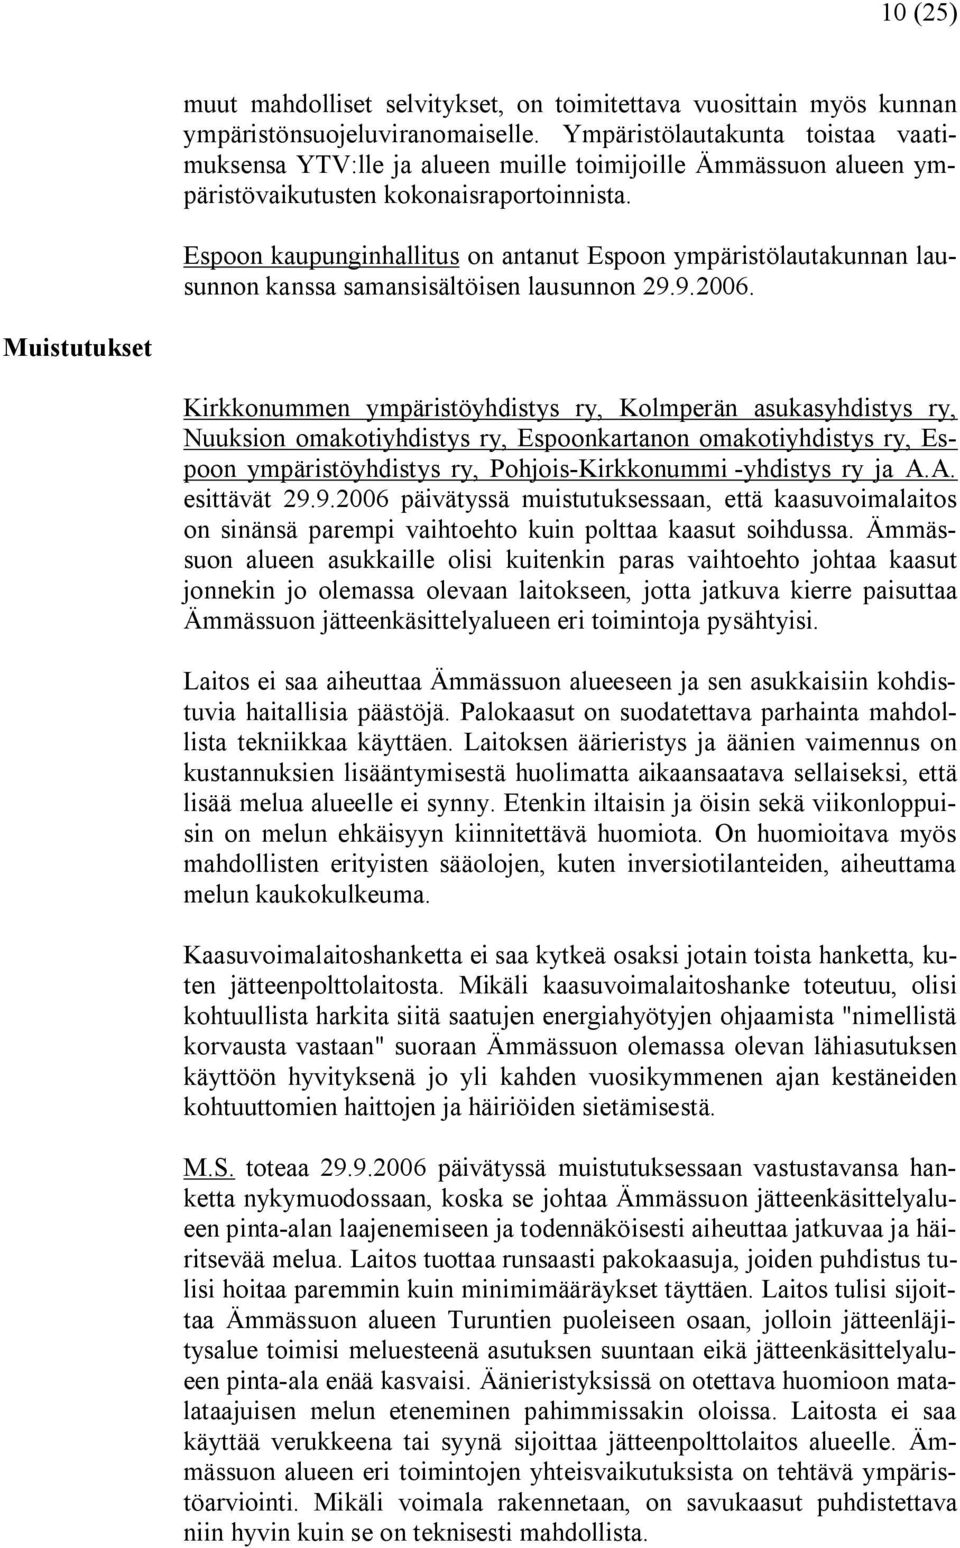 Espoon kaupunginhallitus on antanut Espoon ympäristölautakunnan lausunnon kanssa samansisältöisen lausunnon 29.9.2006.